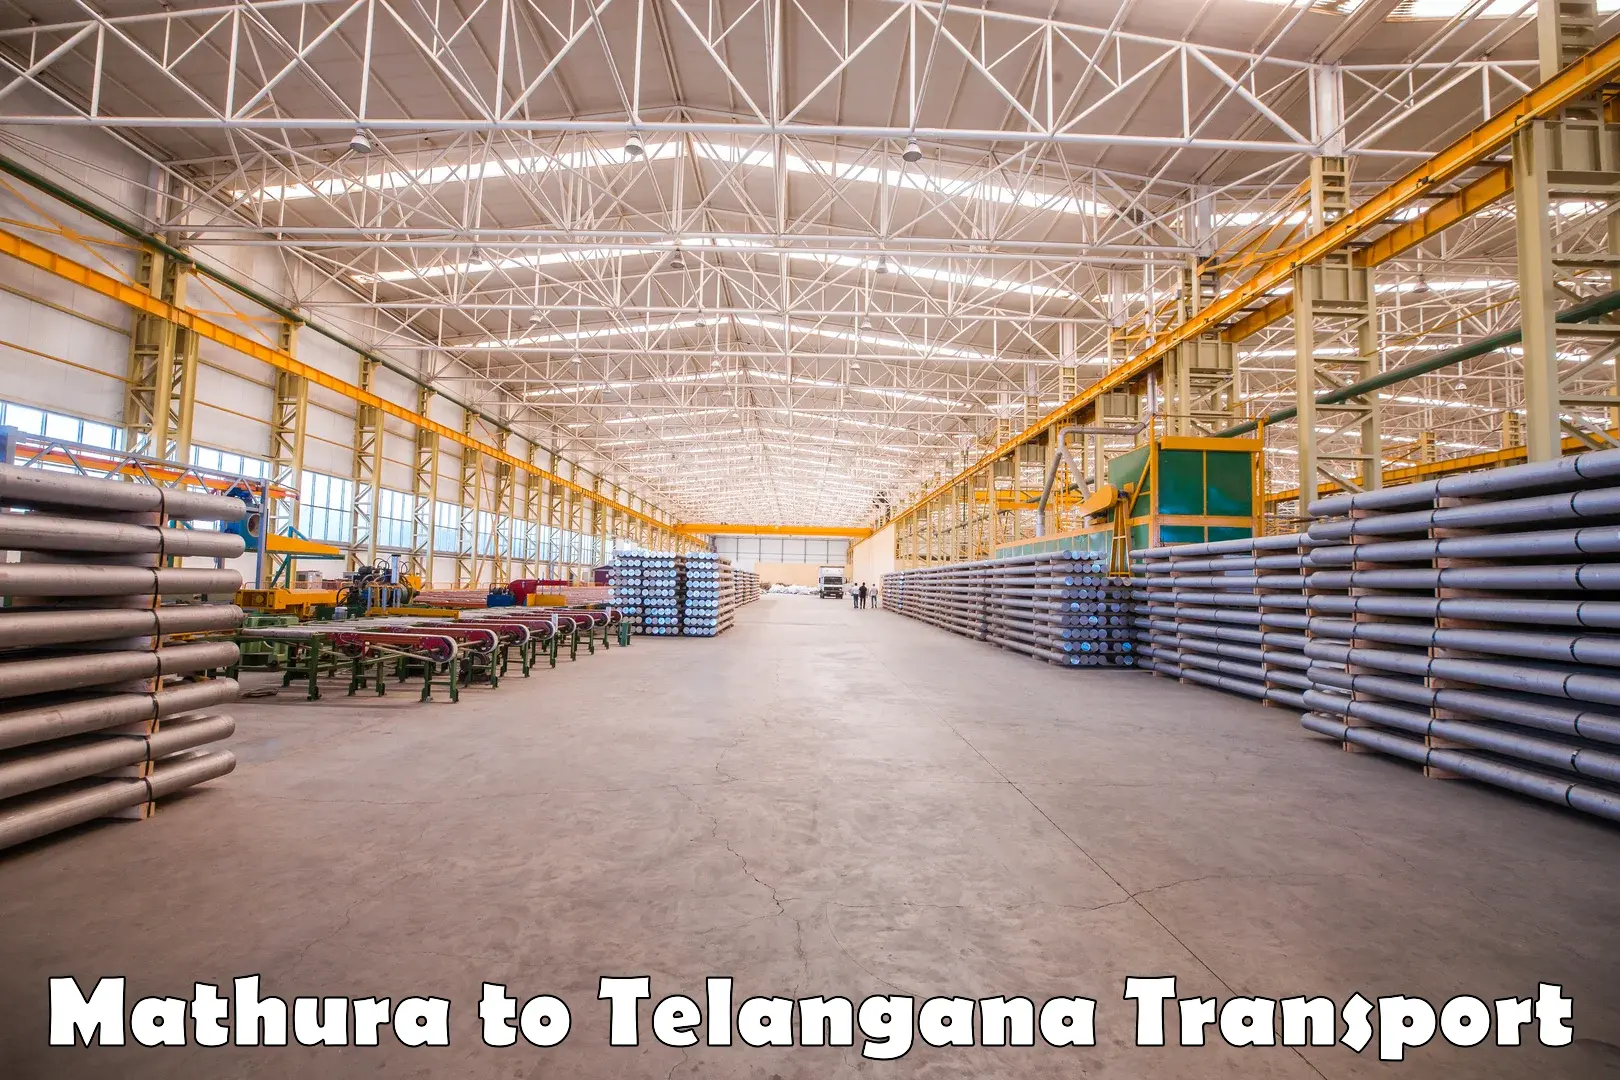 Furniture transport service Mathura to Telangana